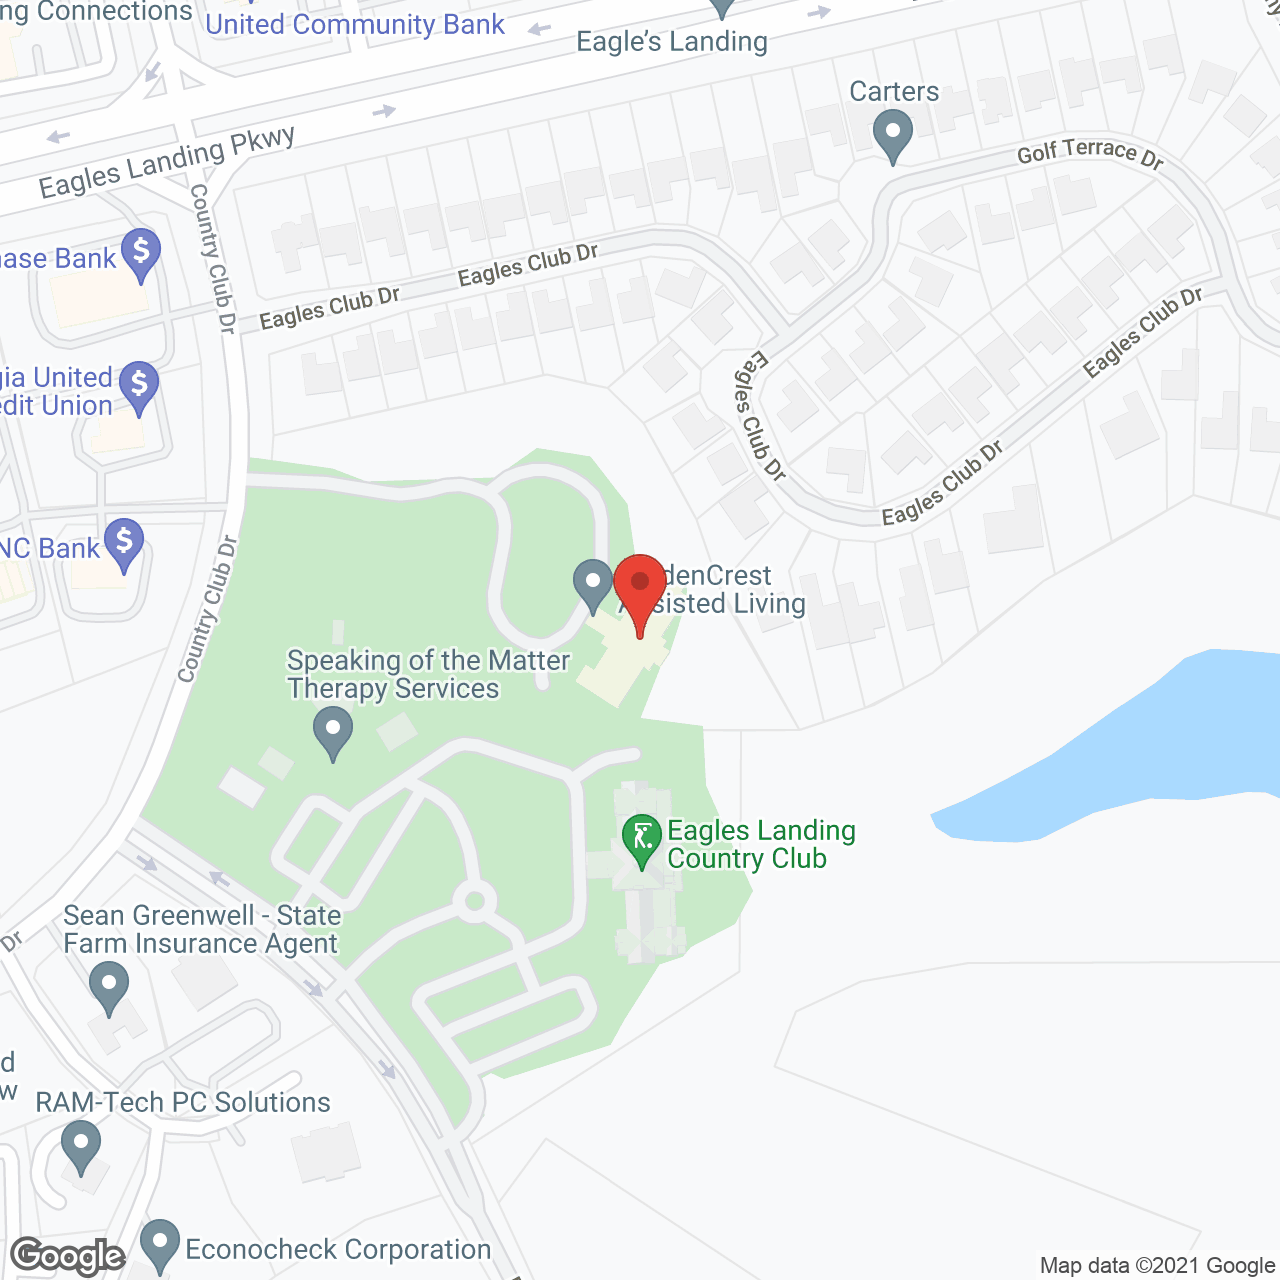 GoldenCrest at Eagle's Landing in google map